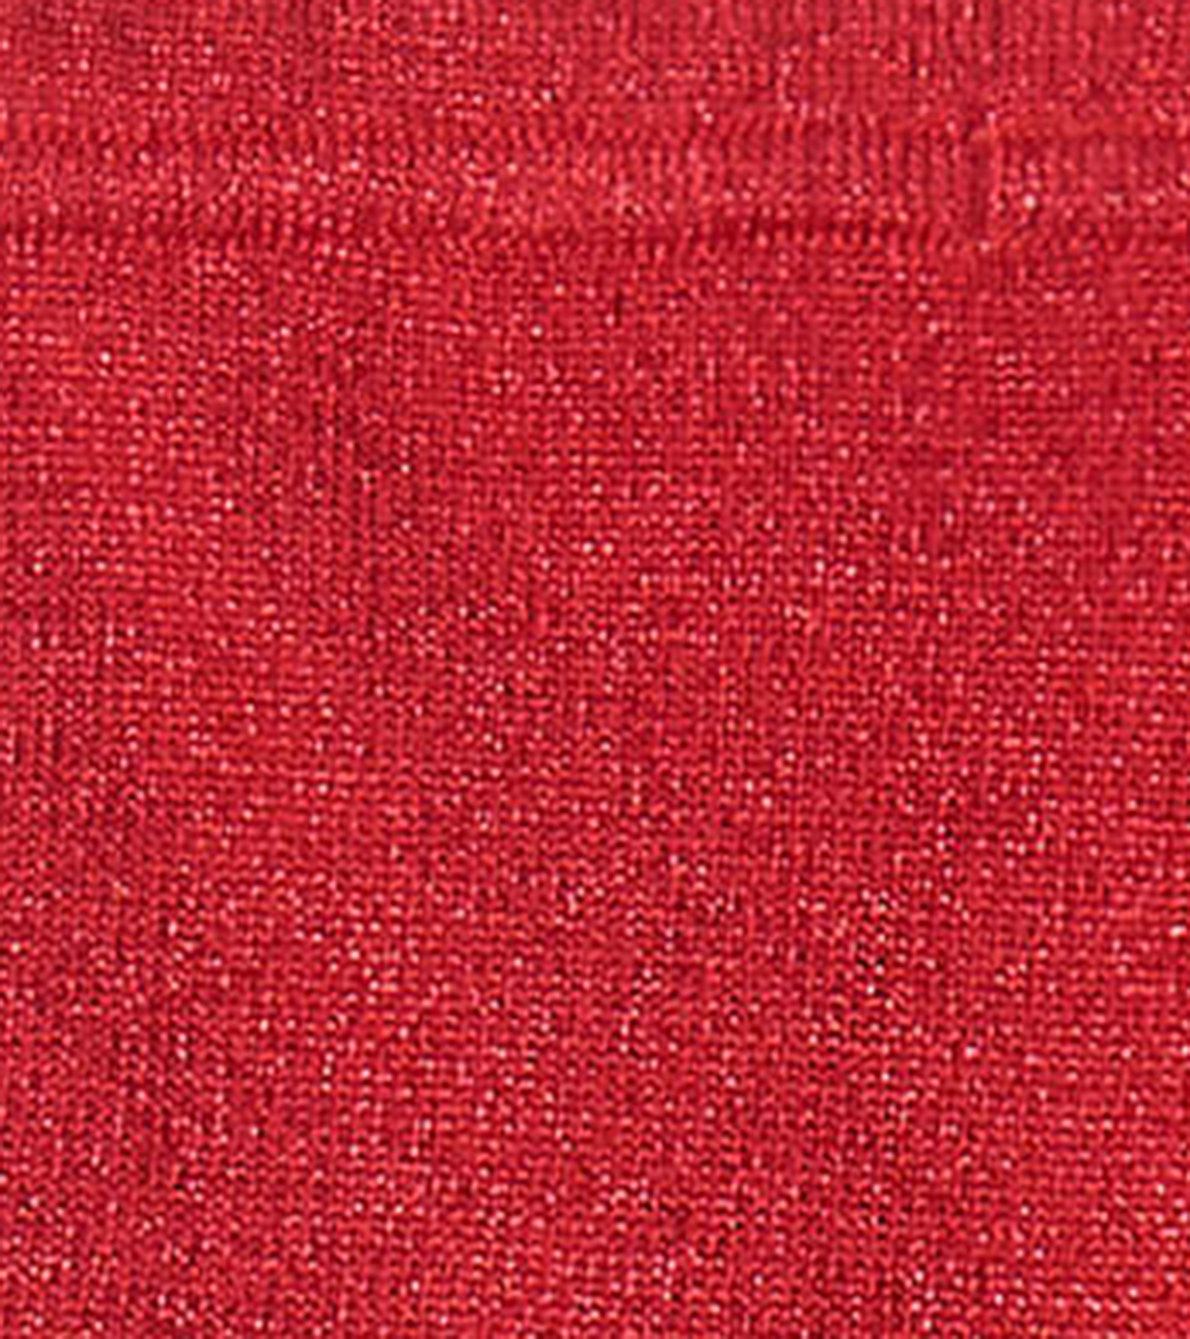 Agrandir l'image de Legging en tricot torsadé pour bébé – Rouge des fêtes